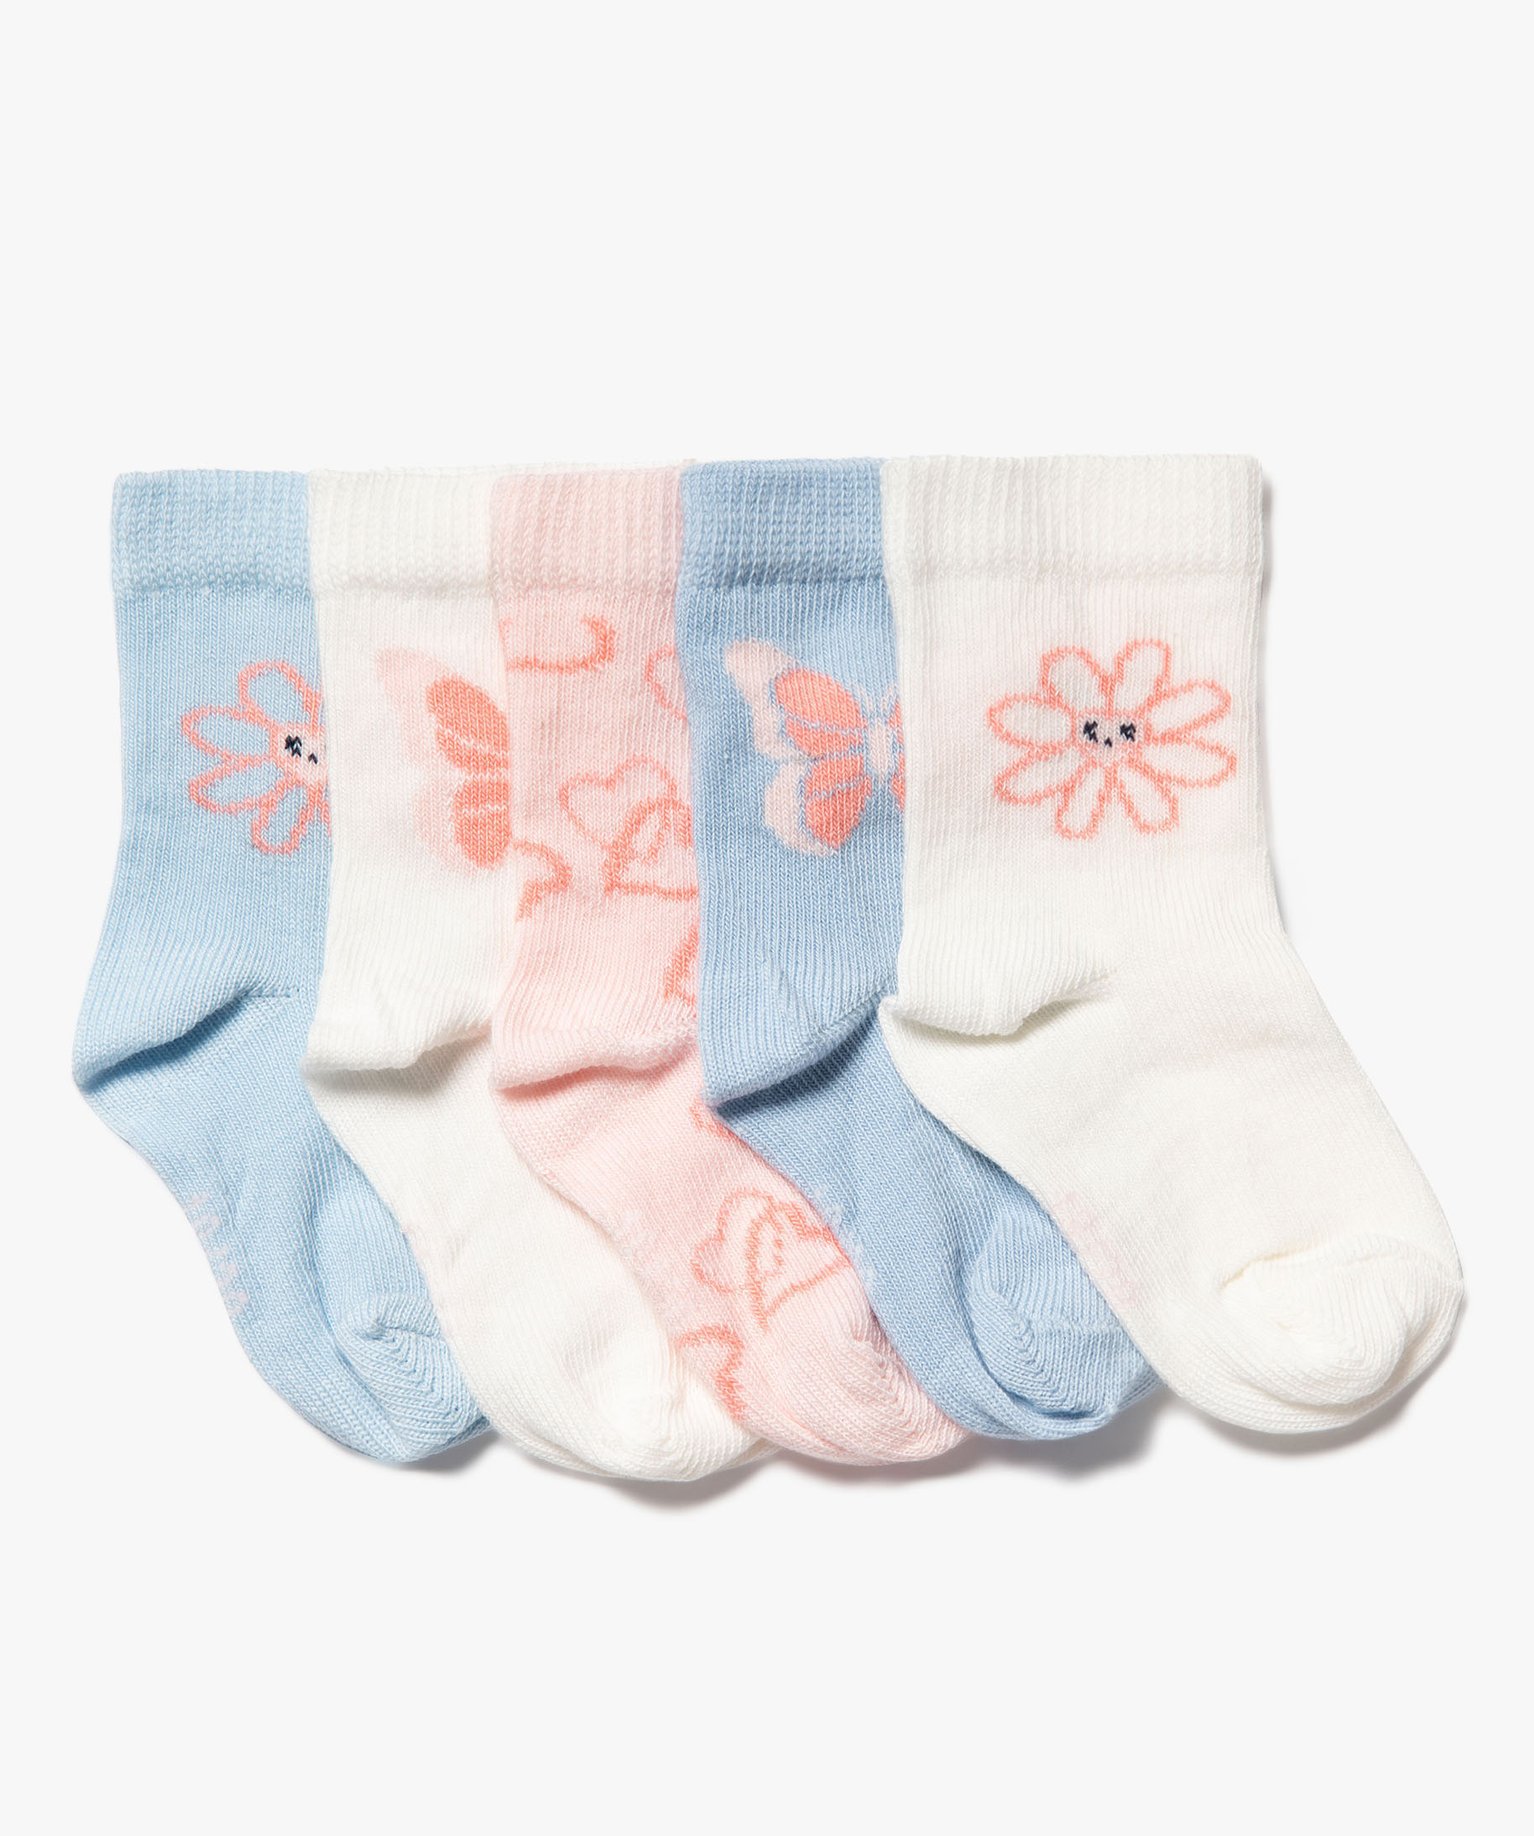 chaussettes a motifs papillons et fleurs bebe fille (lot de 5) bleu chaussettes